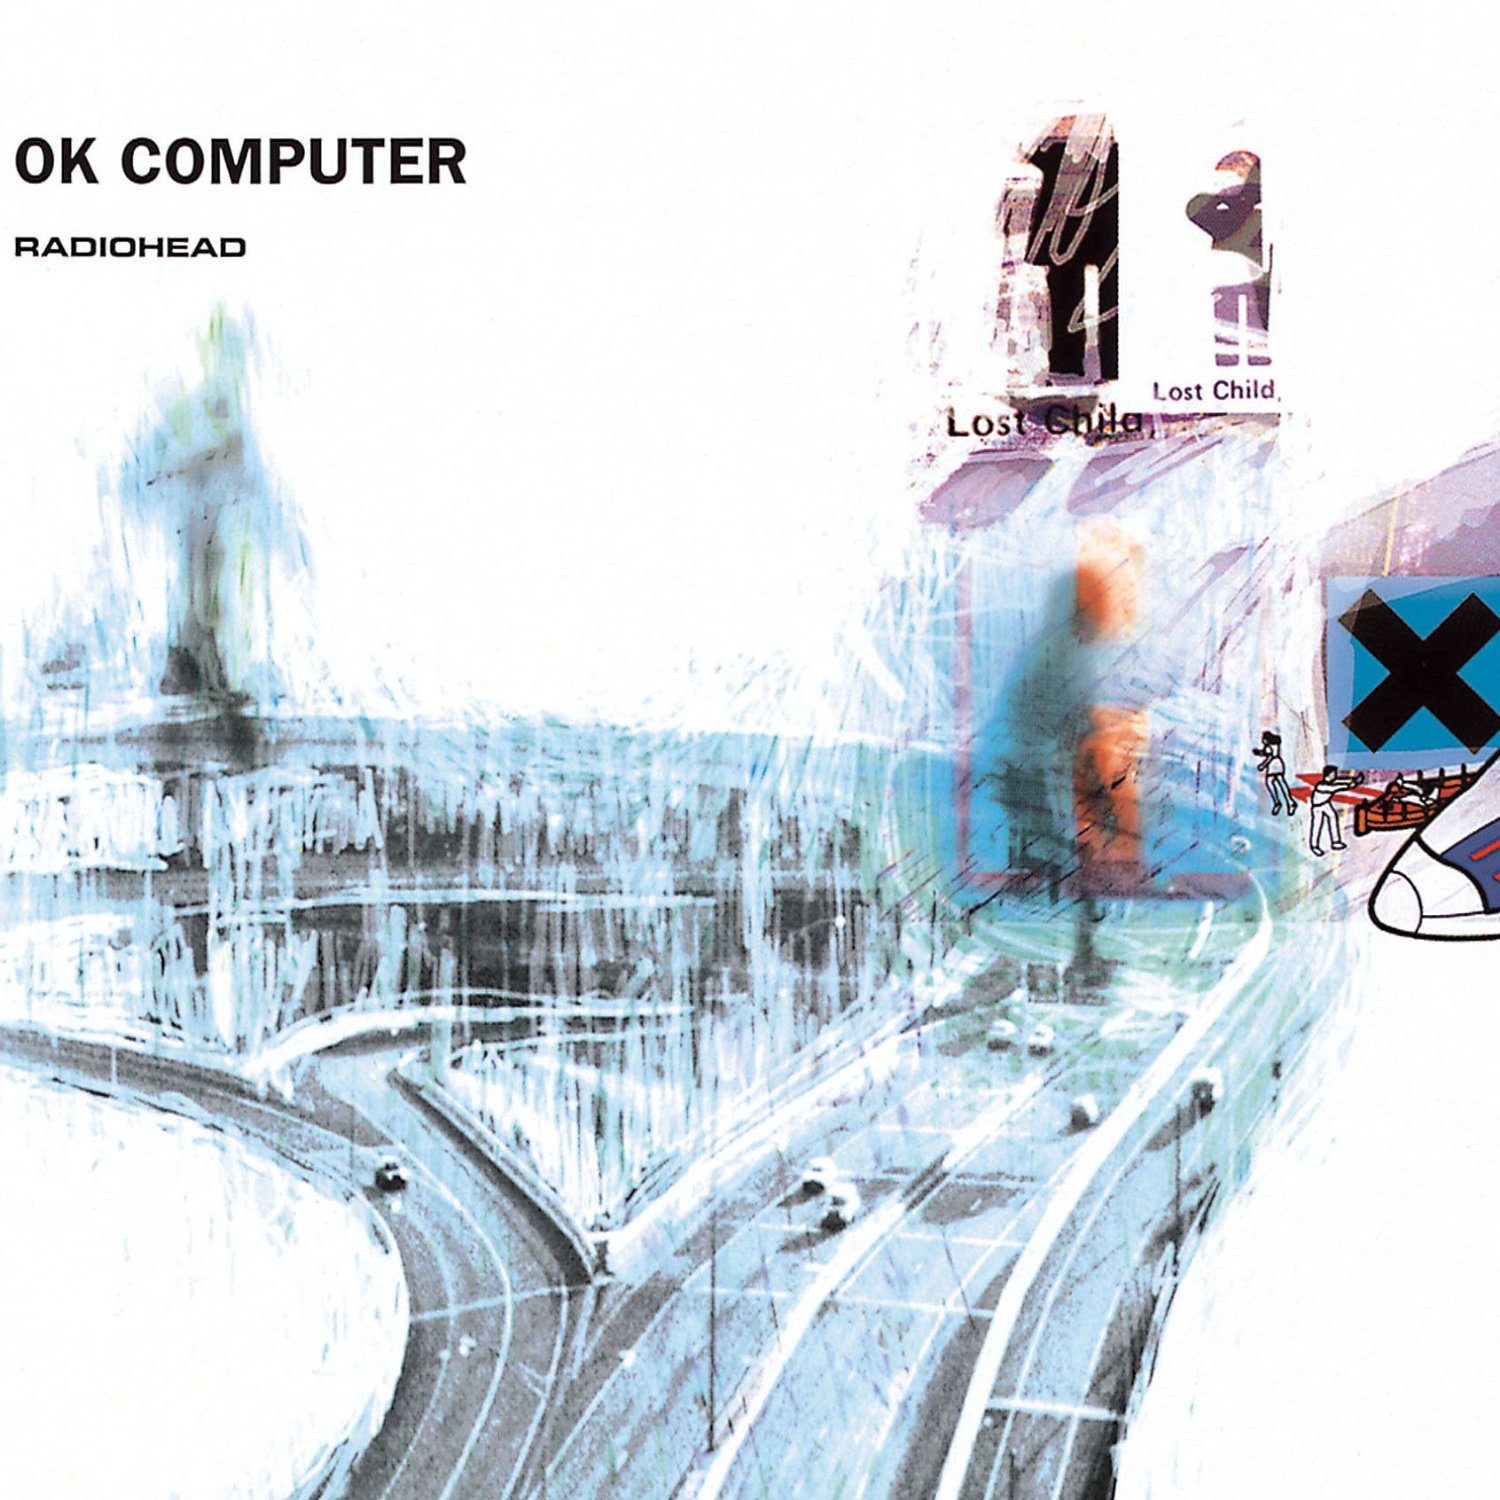 Pourquoi “OK Computer” de Radiohead est devenu un album culte